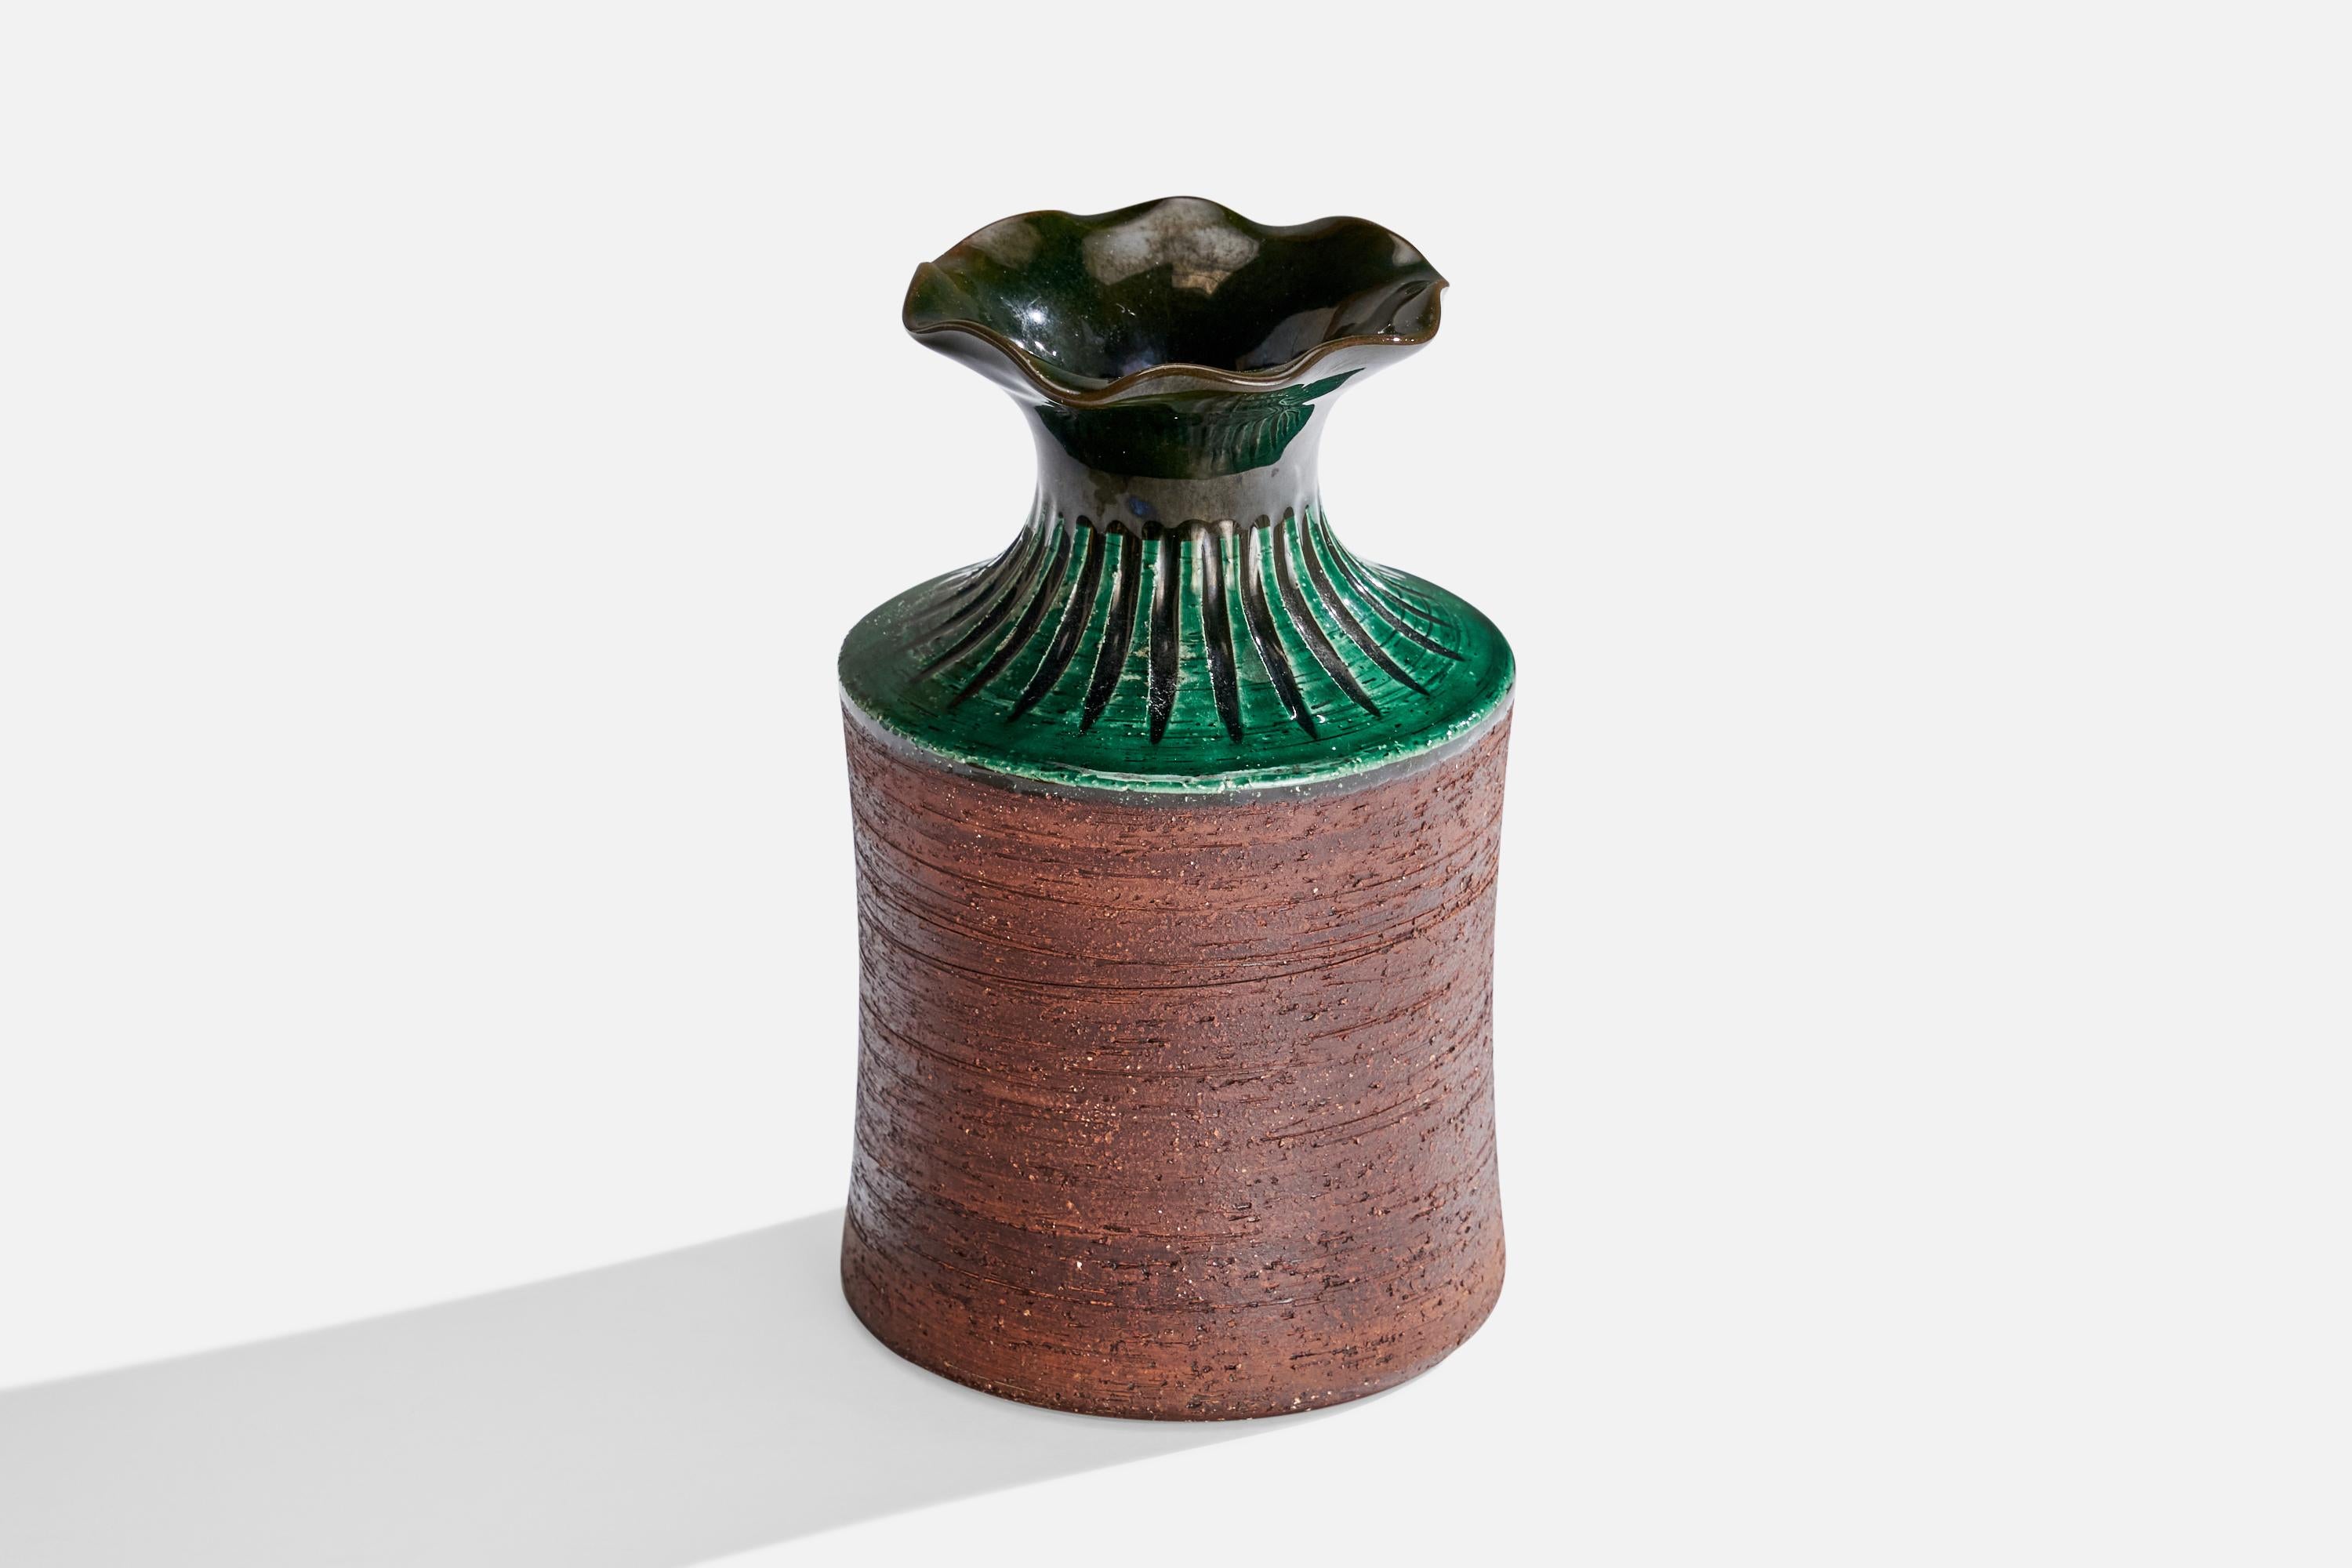 Jarrón de loza vidriada en verde y marrón, diseñado y producido por Gabriel Keramik, Suecia, c. 1950.